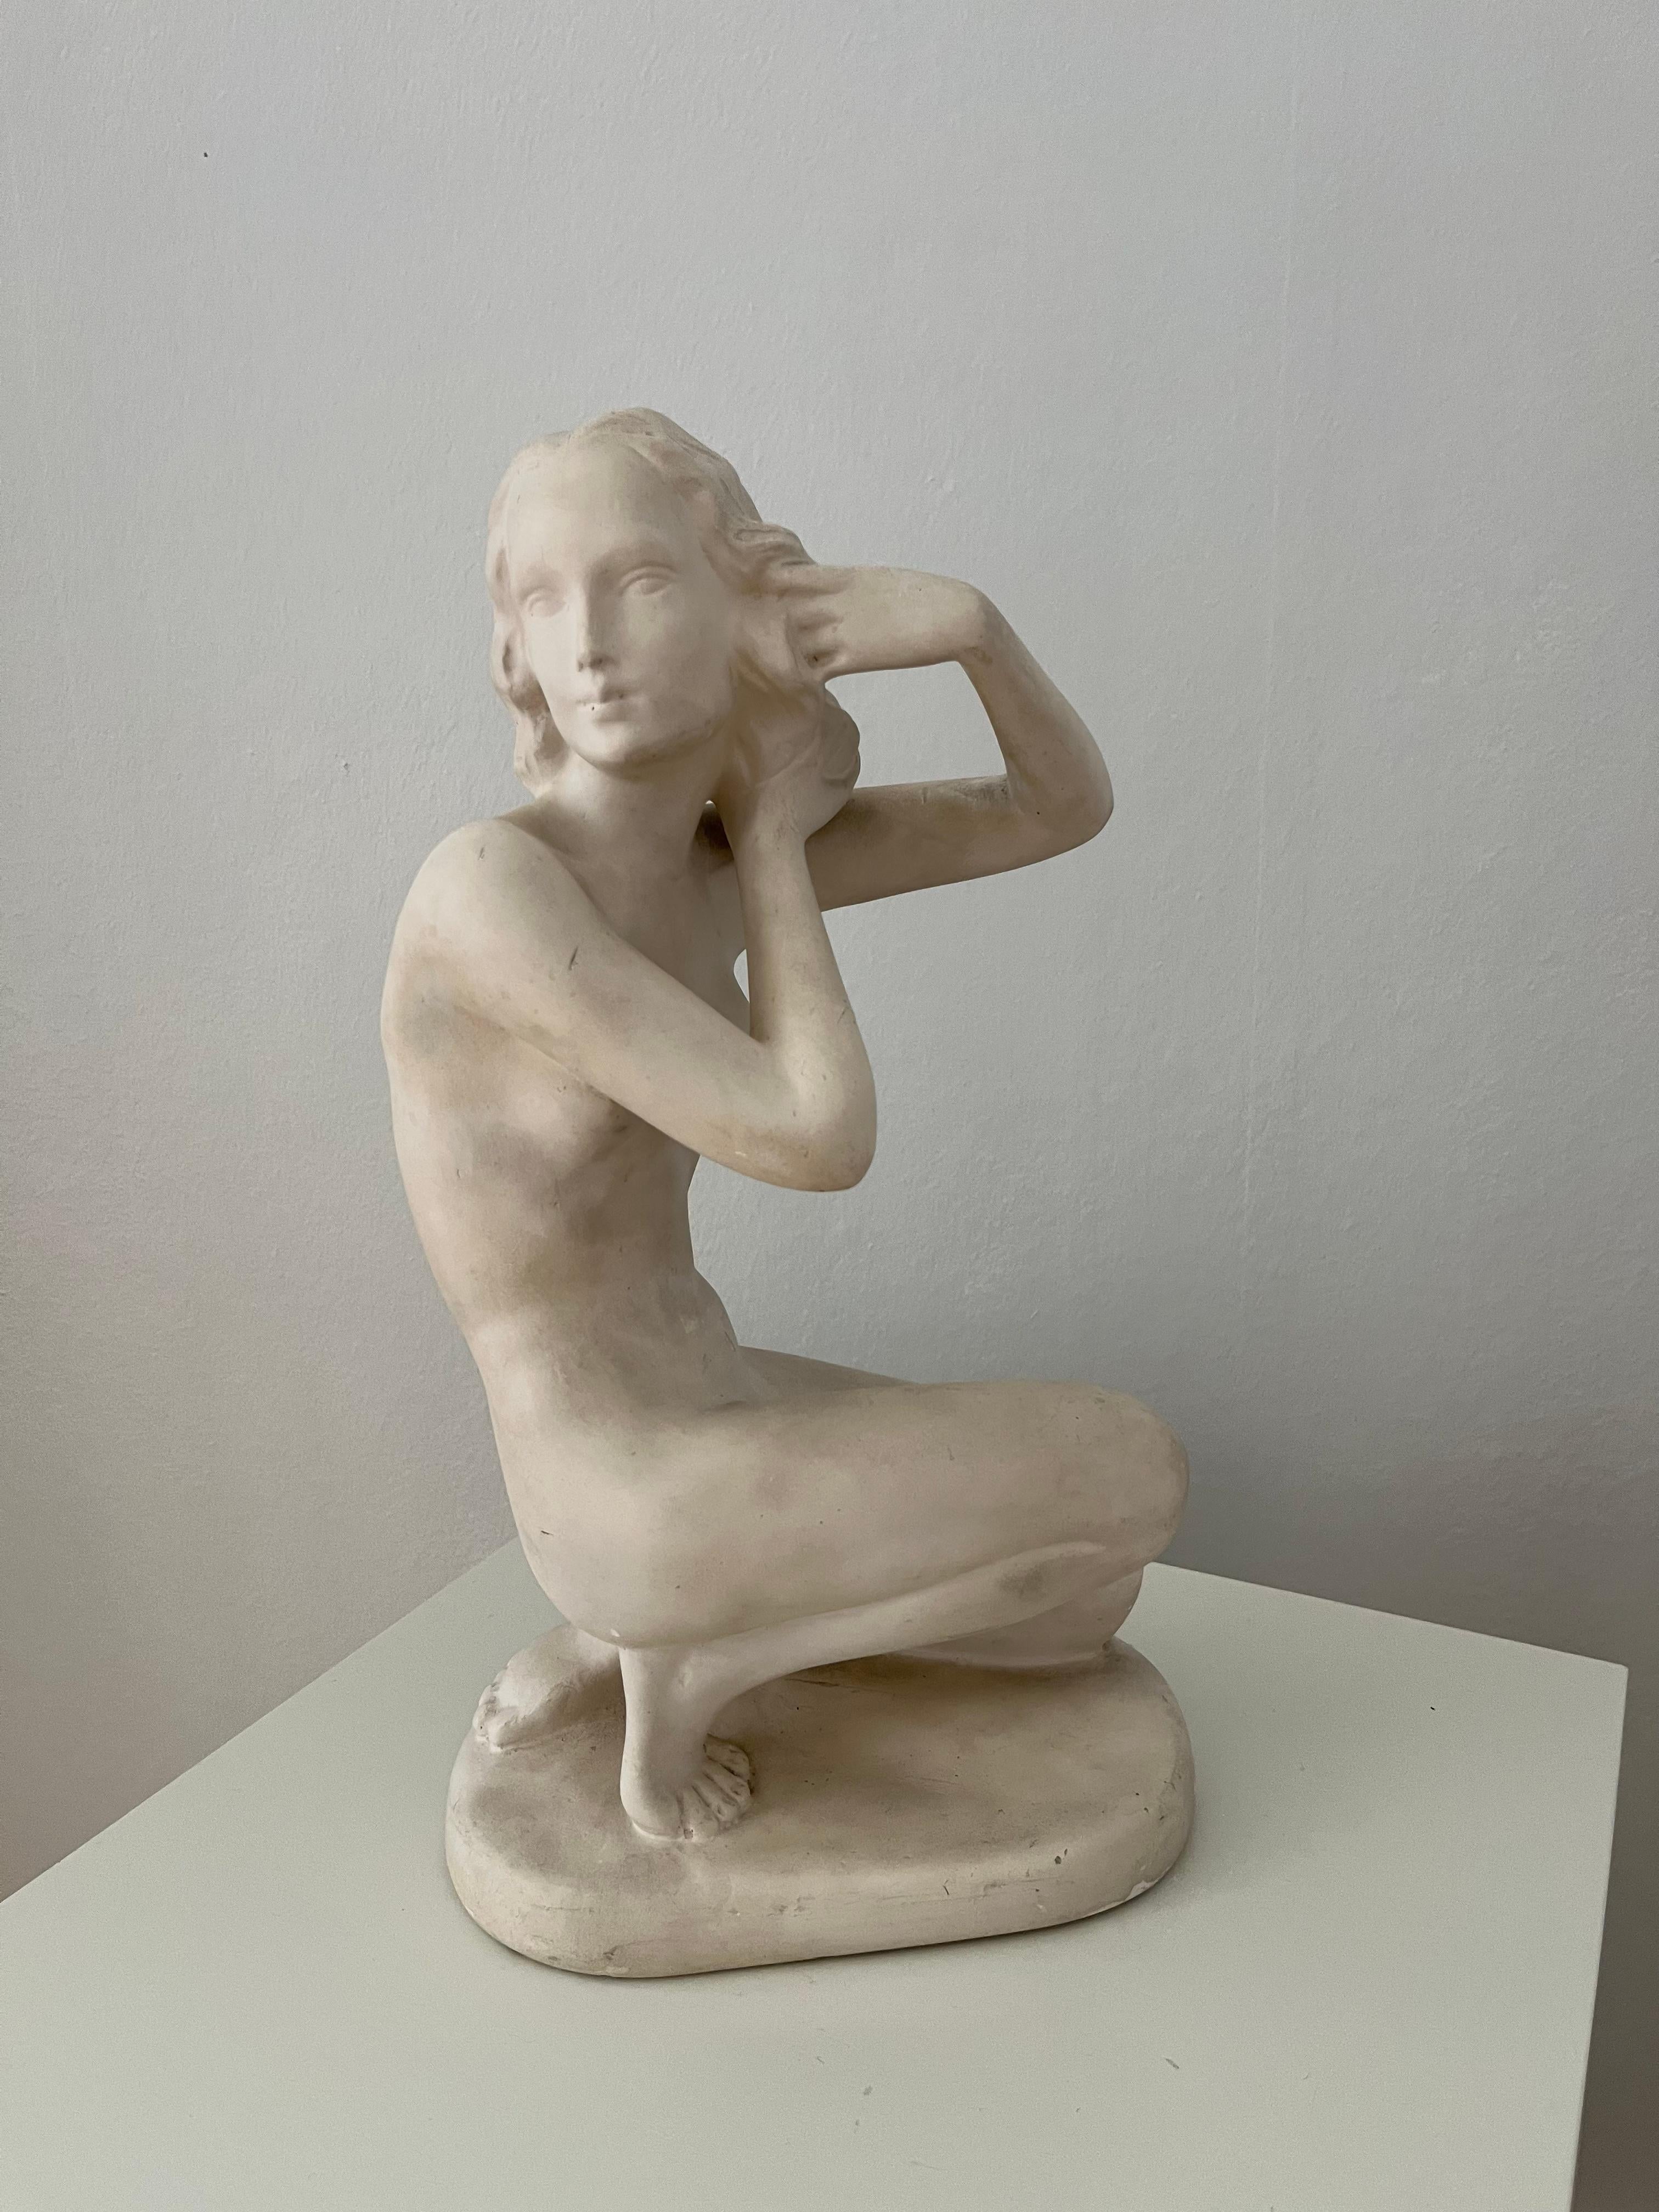 Handgefertigte Figur einer sitzenden Frau aus mattem weißem Gips. Hergestellt in Dänemark in den 1940er Jahren, signiert '737'. 
Sehr dekoratives Stück mit Gebrauchsspuren, Kratzern und Absplitterungen - insgesamt patiniert, die matte Oberfläche